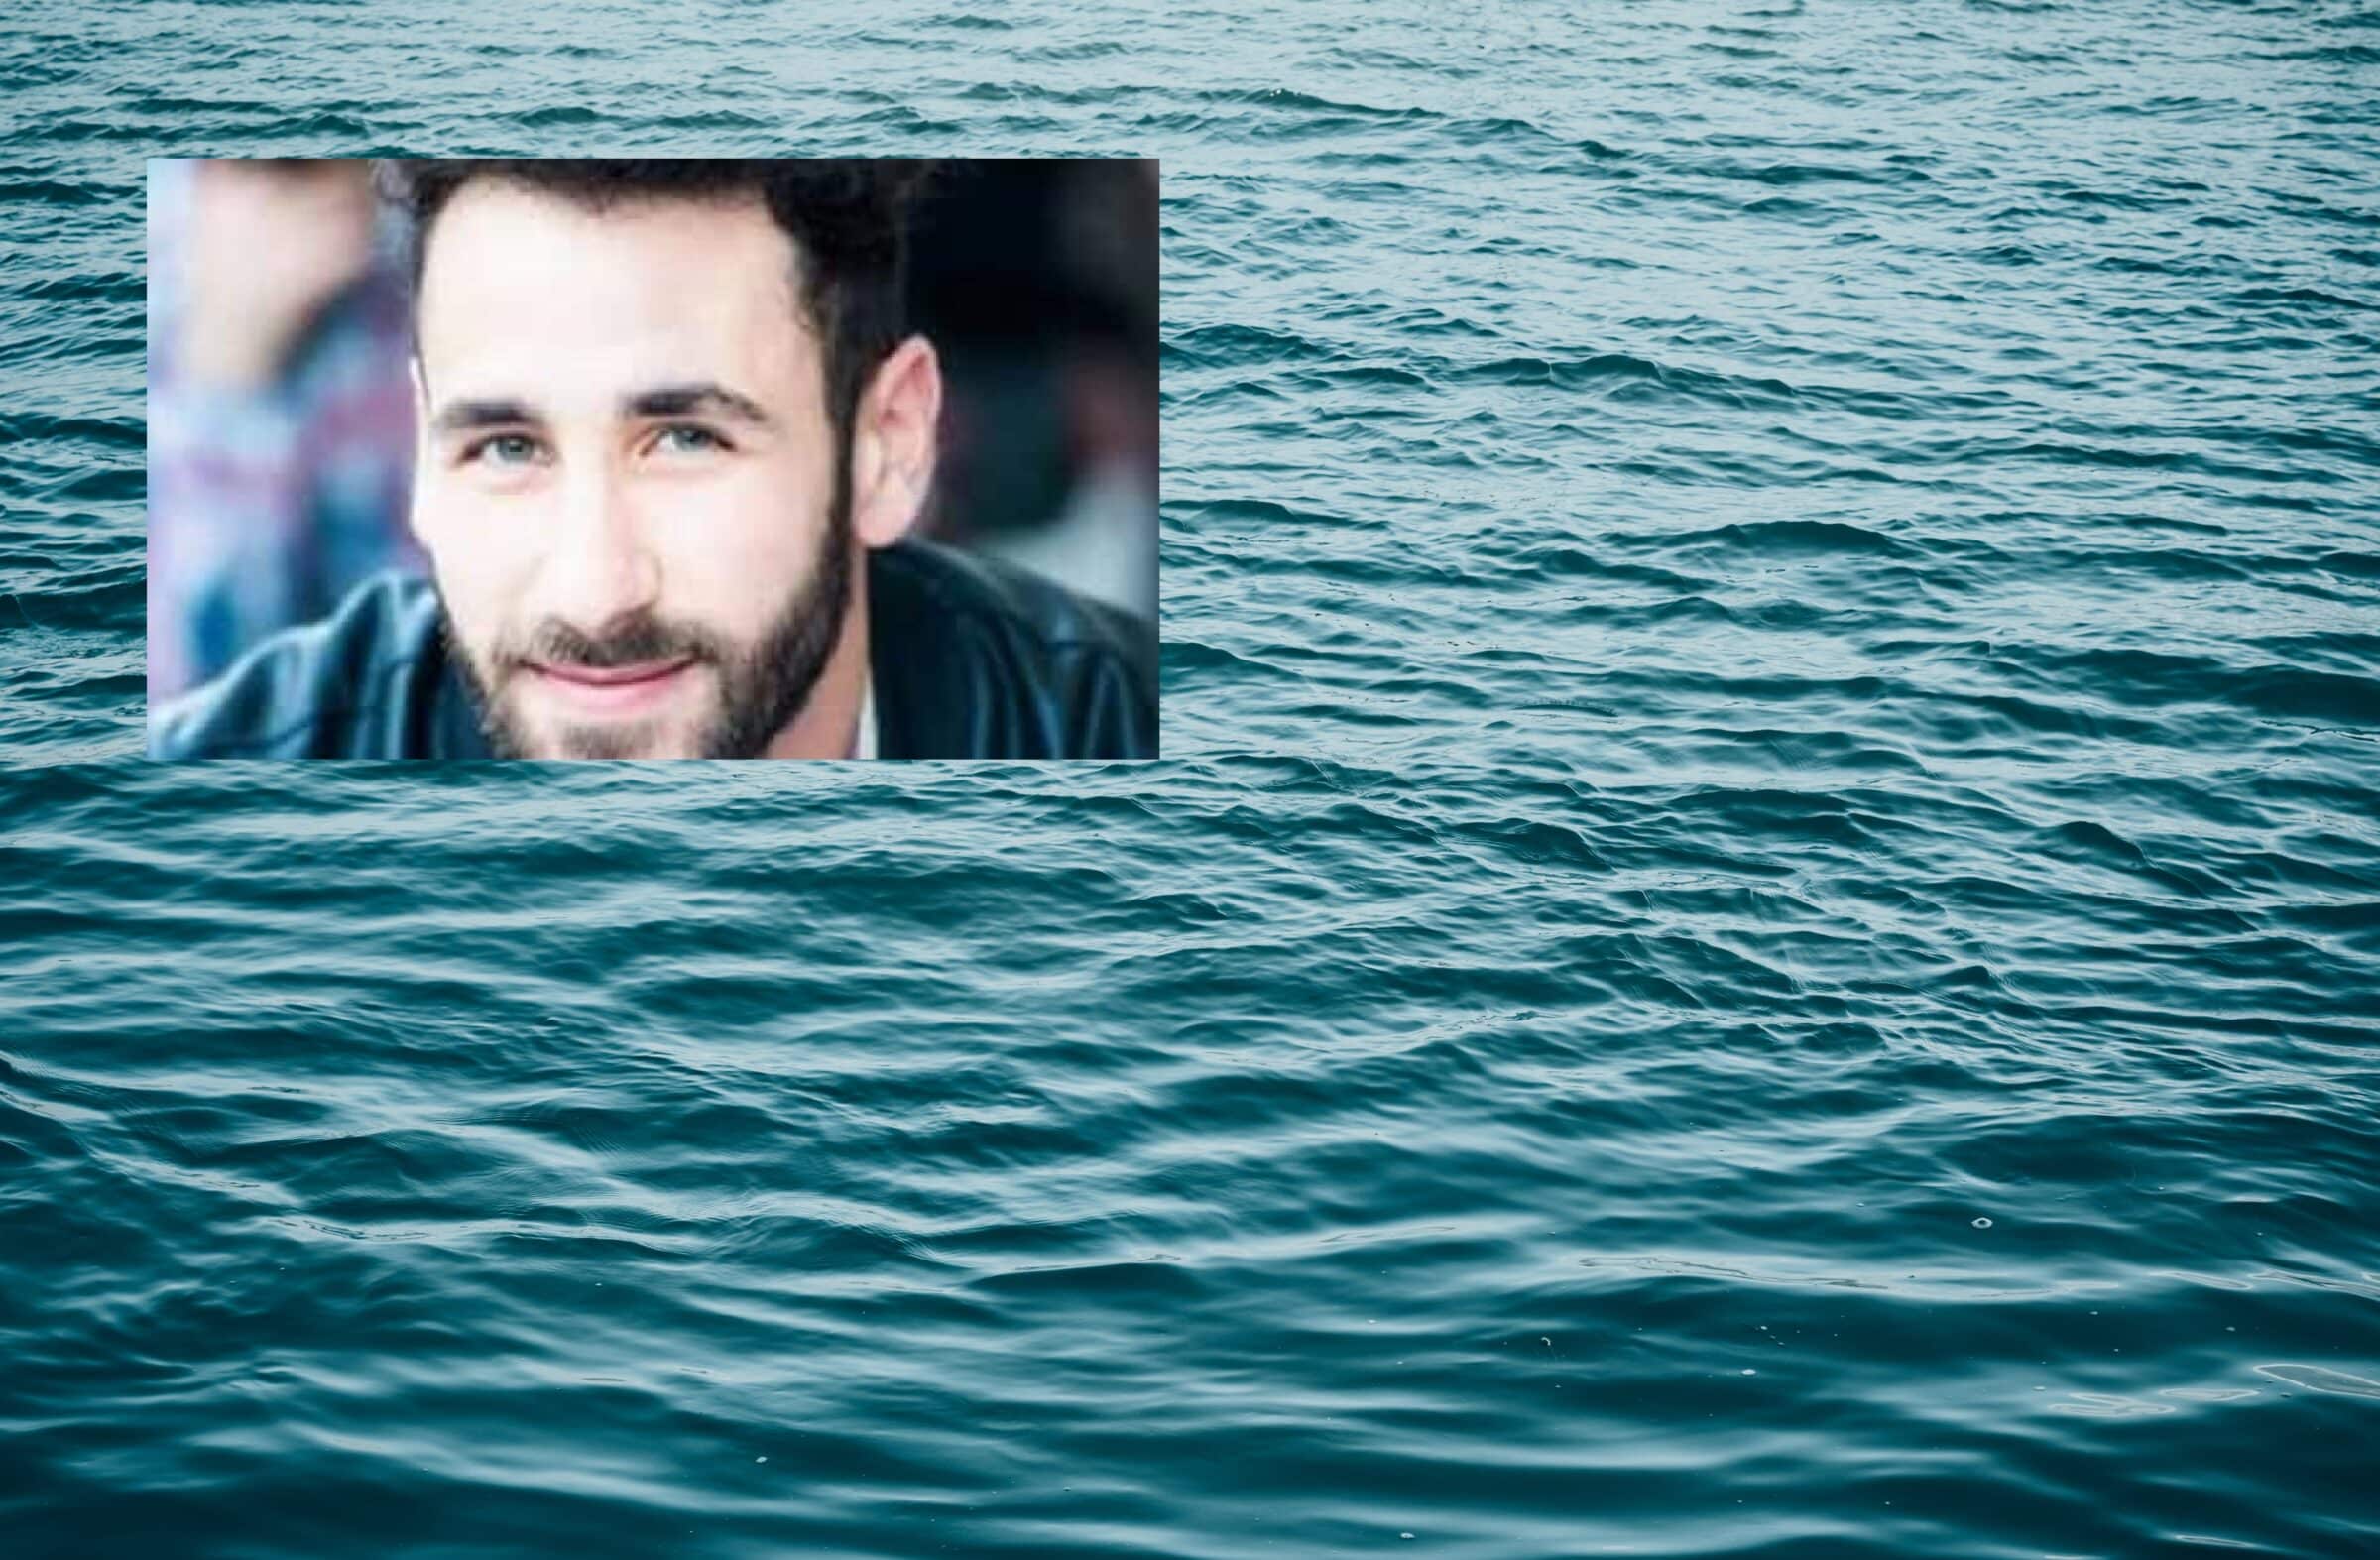 La morte in mare di Vito Bugliarello, nessun selfie: i due ragazzini stavano facendo il bagno